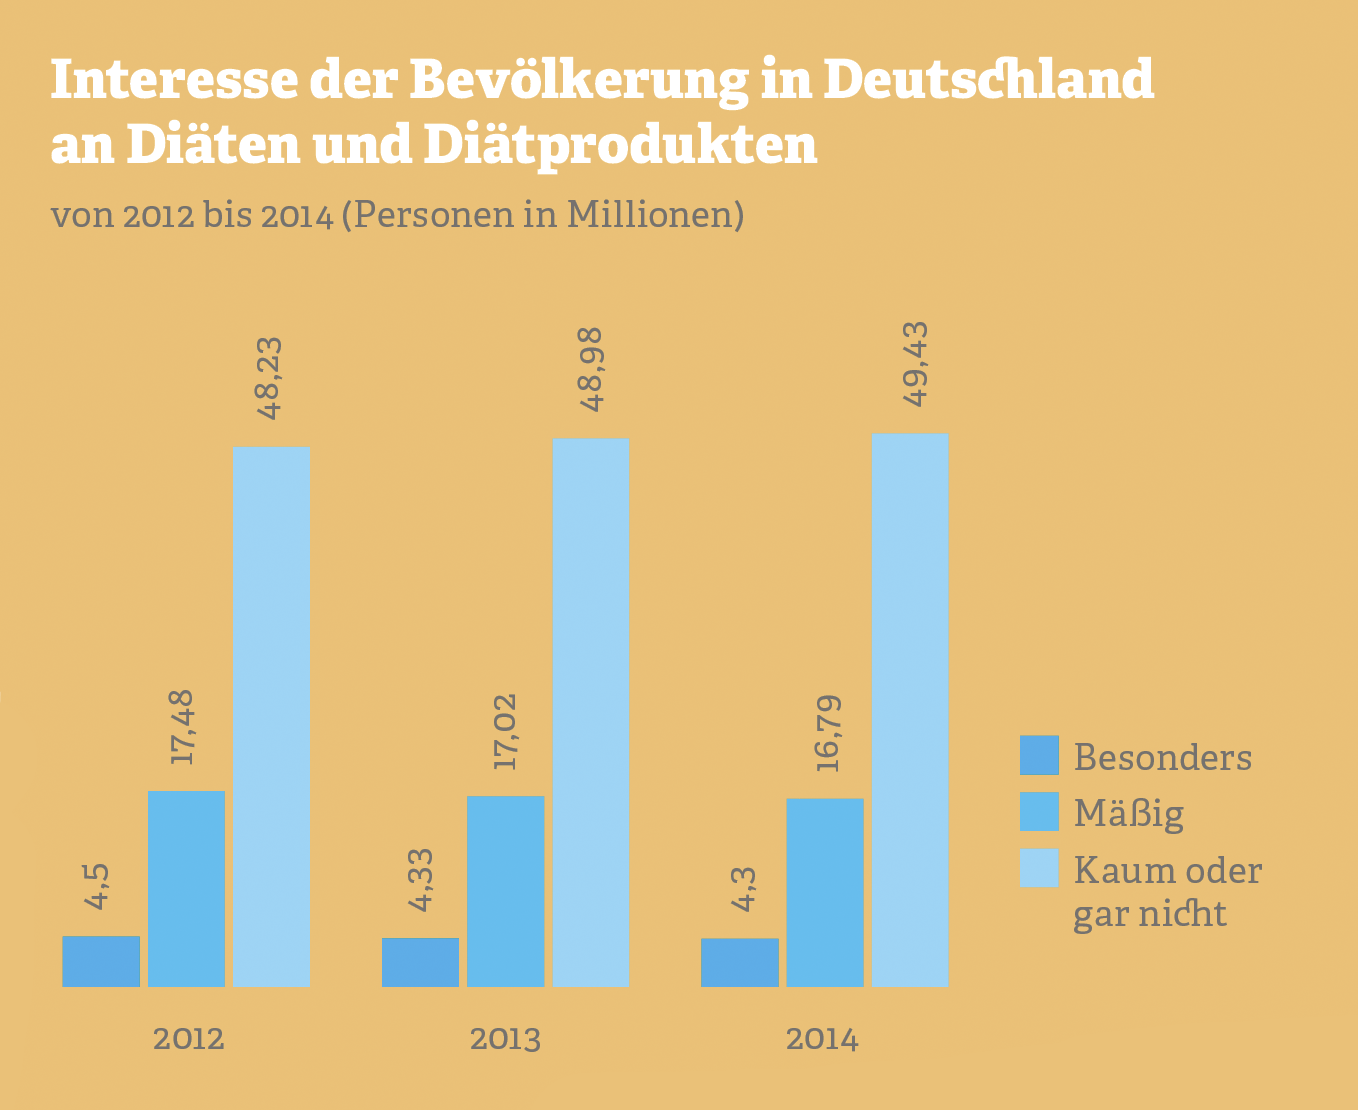 Grafik zum Interesse der Bevölkerung in Deutschland an Diäten und Diätprodukten. Quelle: IfD Allensbach, 2014